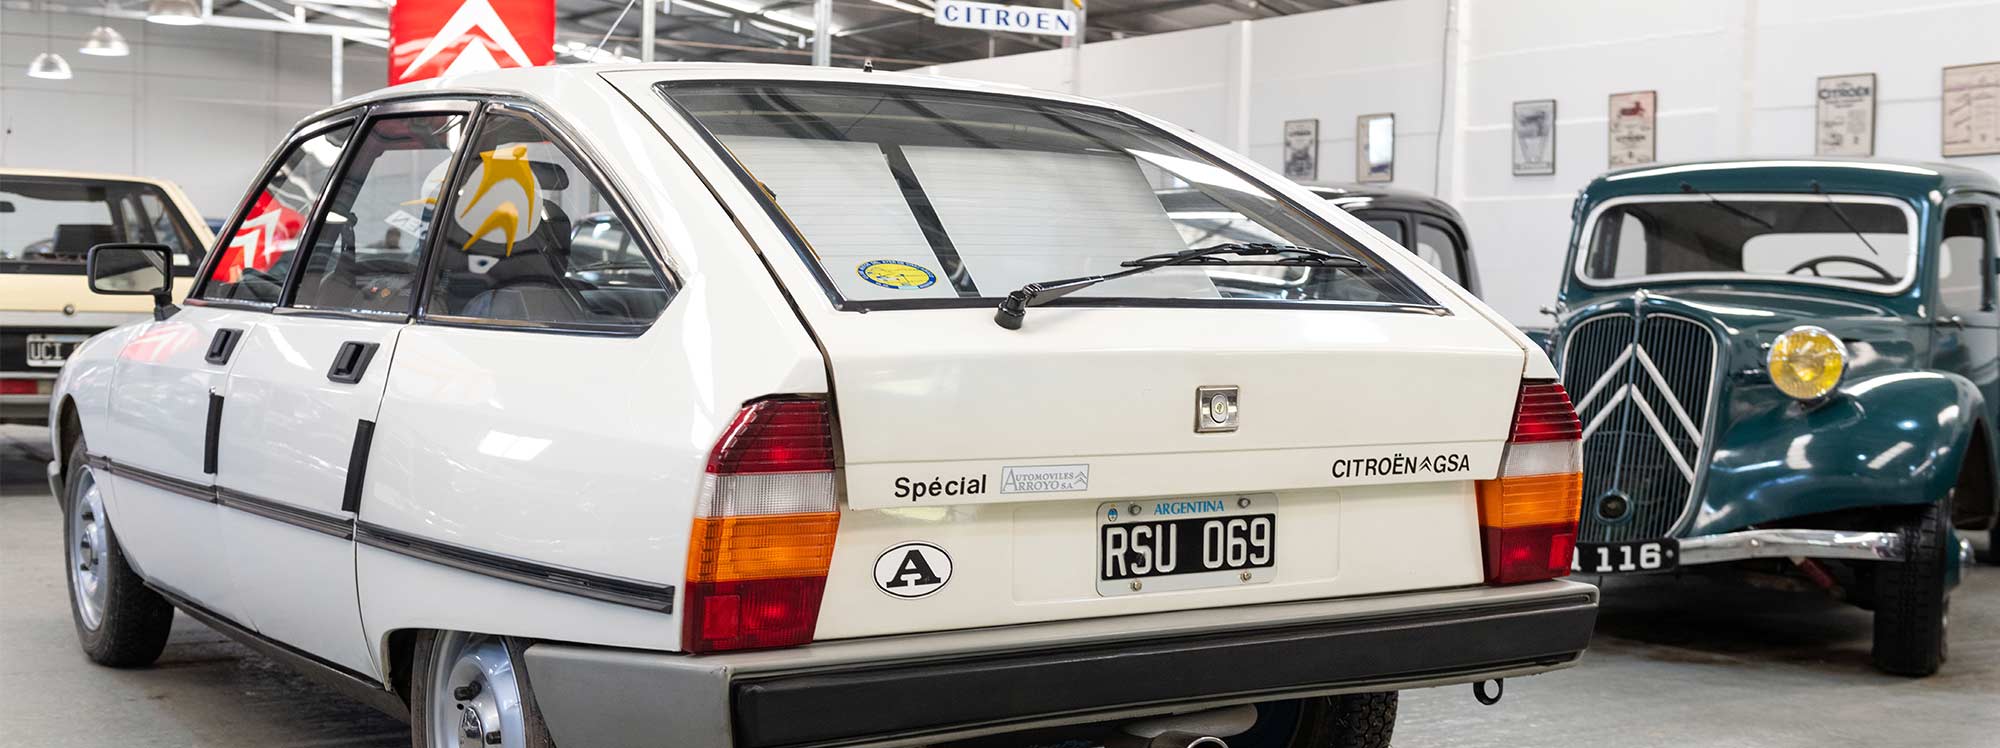 Un recorrido por la historia de Citroën GS